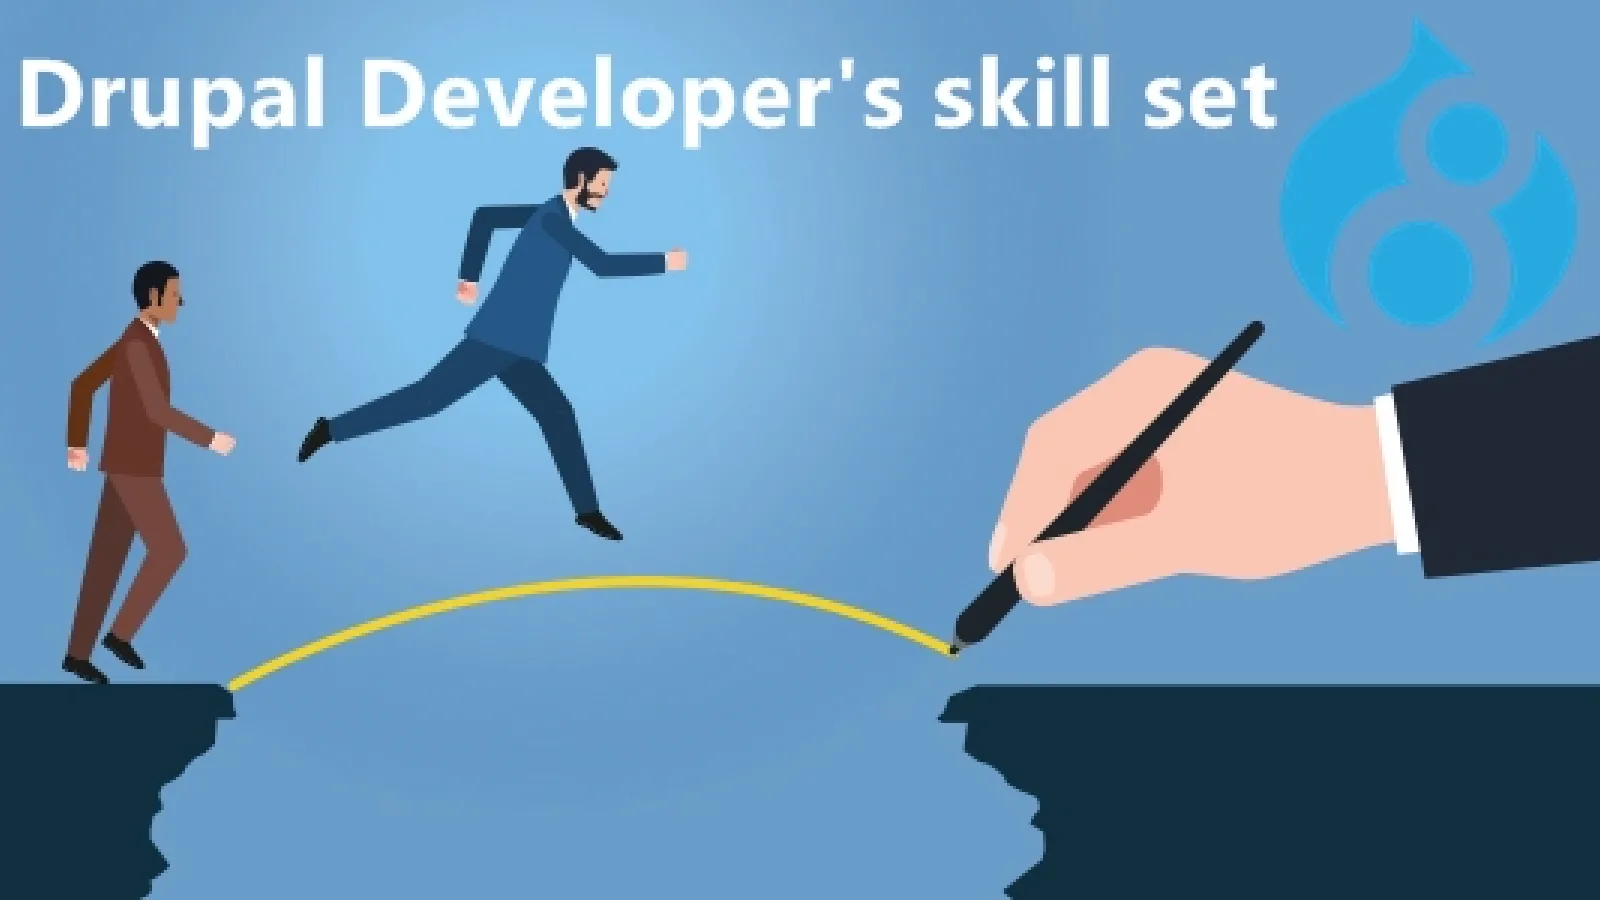 What skills should a Drupal Developer have?